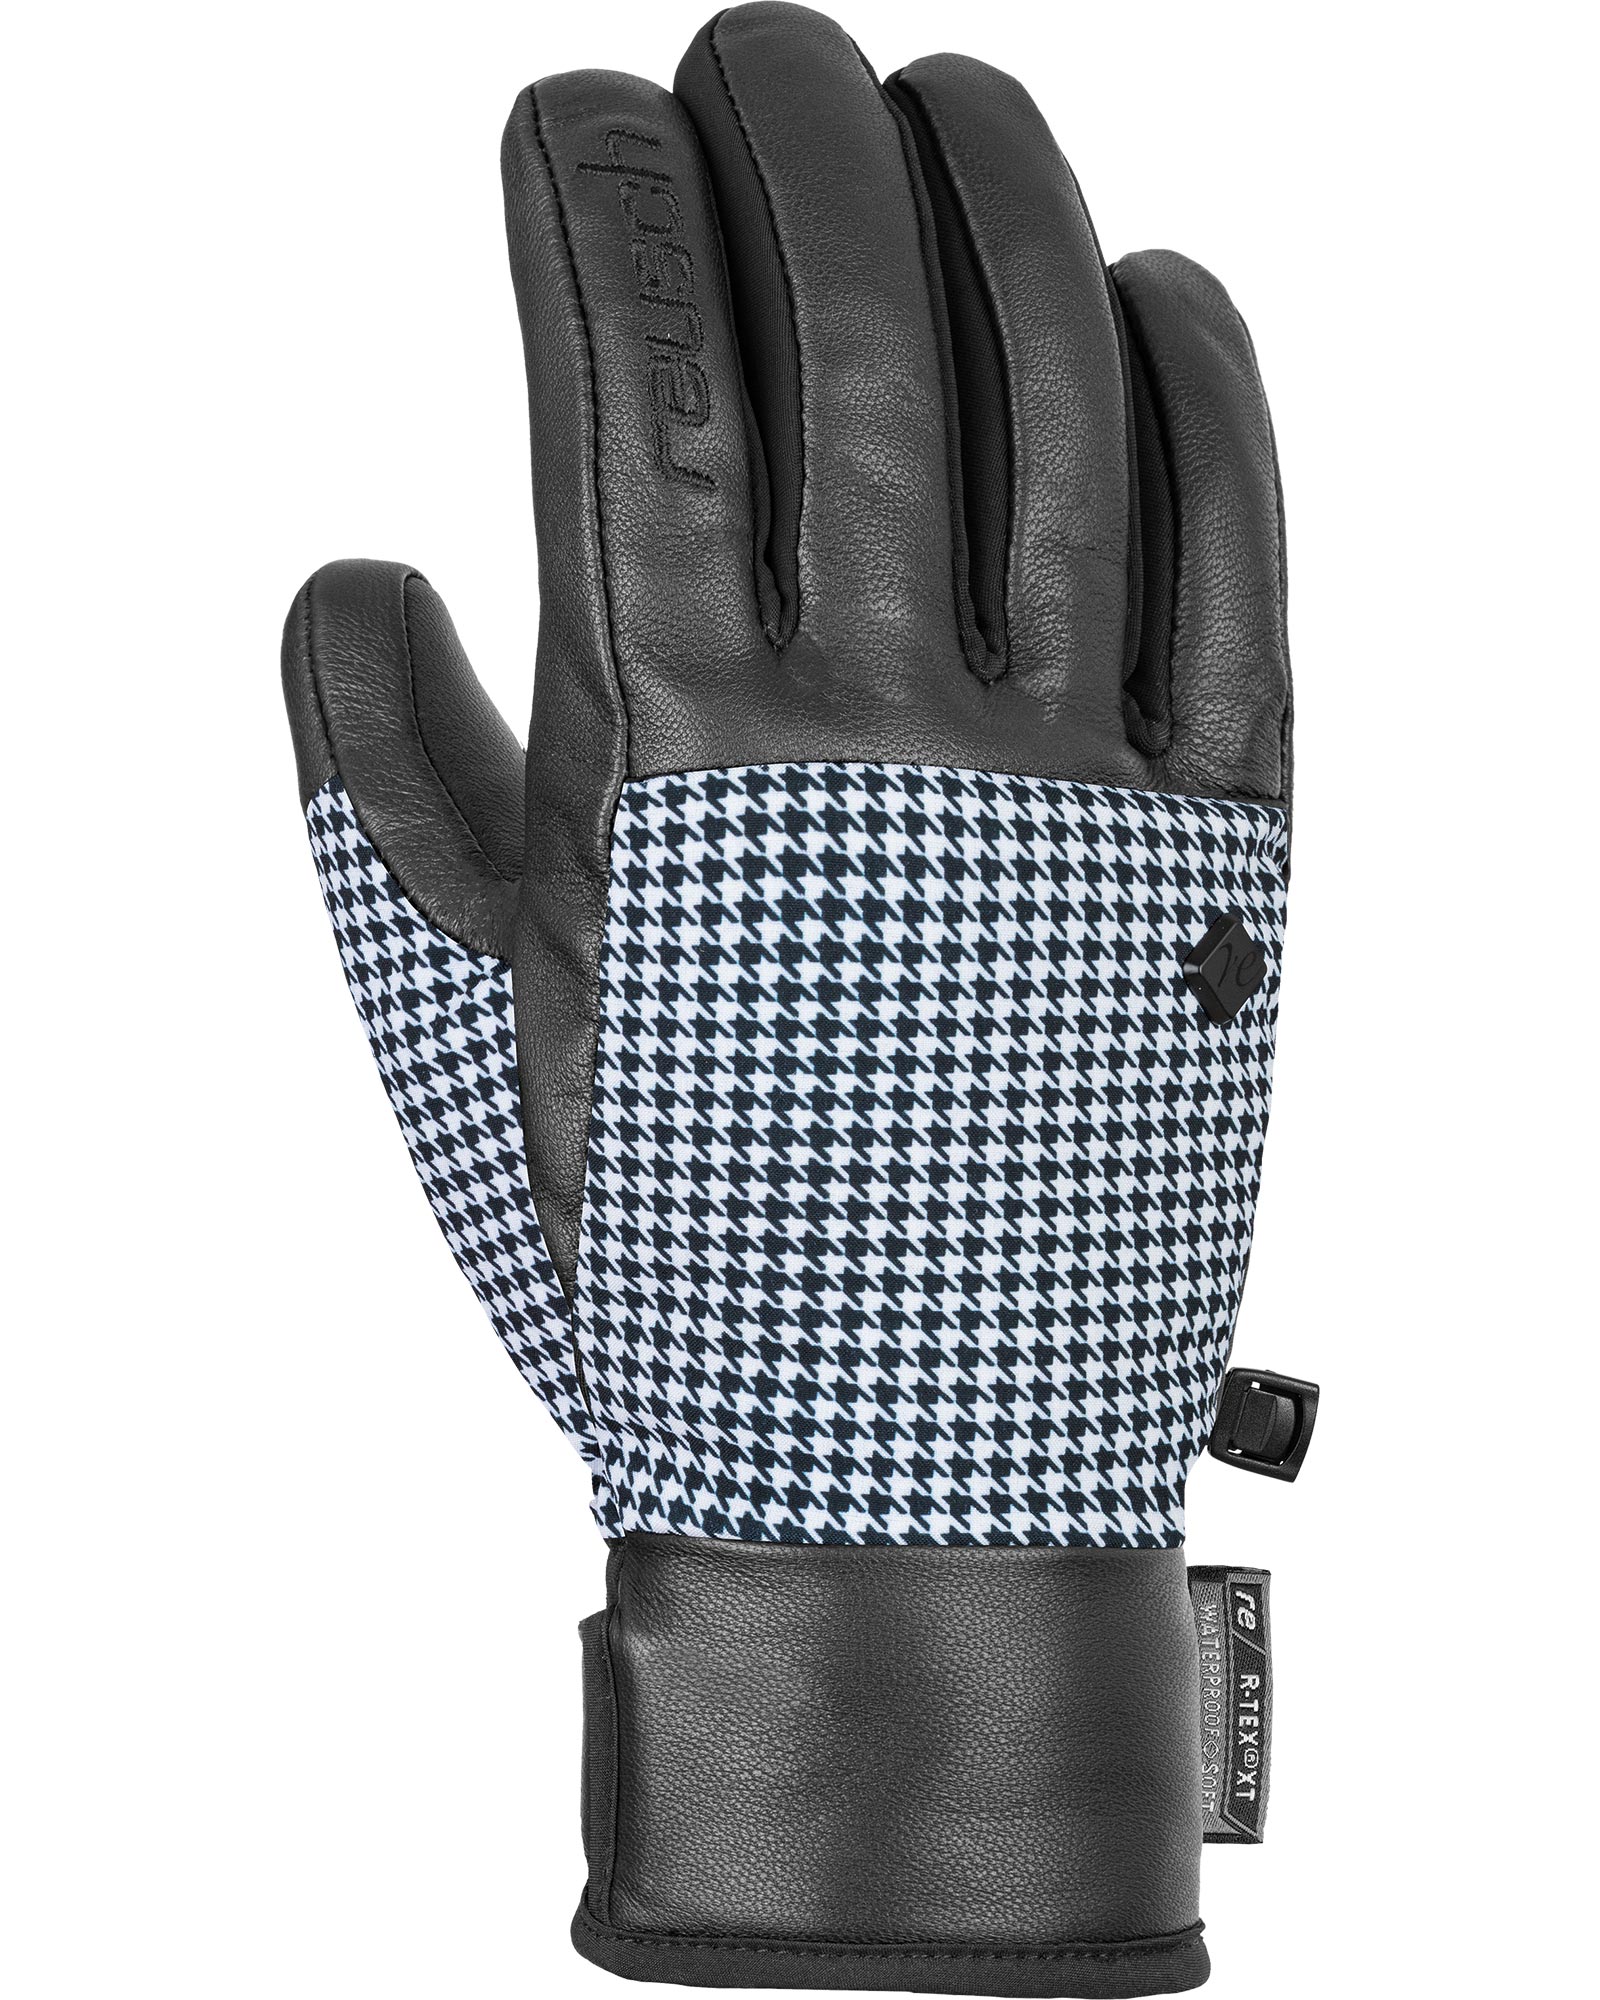 Reusch Giorgia R Tex Women’s Gloves - Black/Pied de Poule Size 6